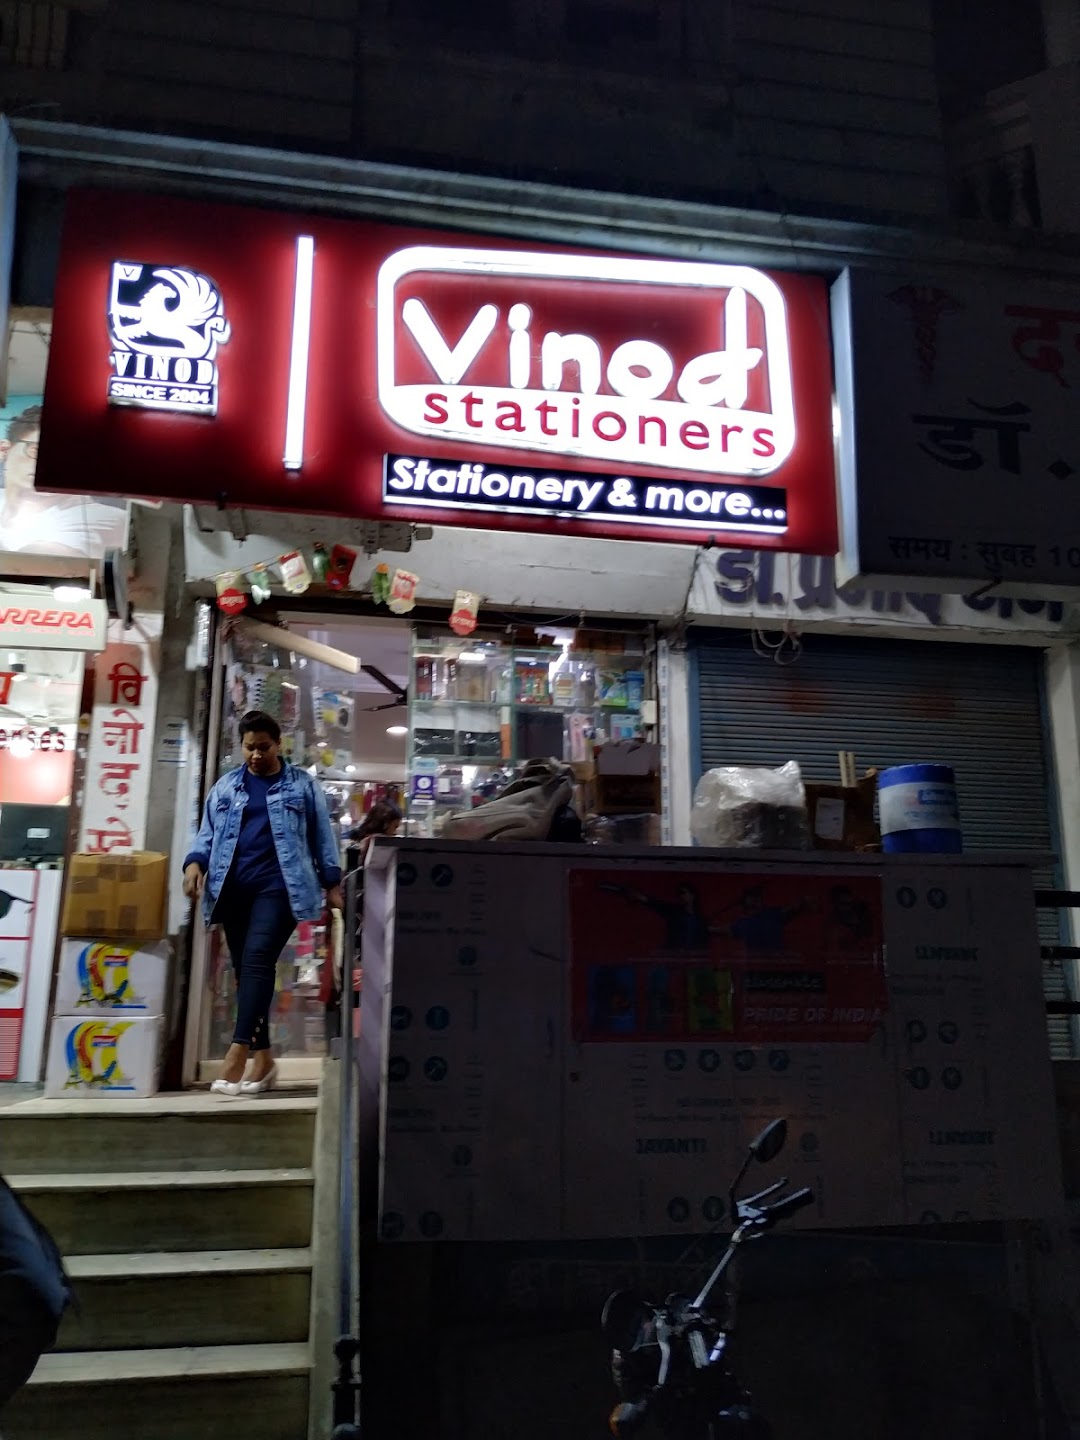 Vinod Stationery